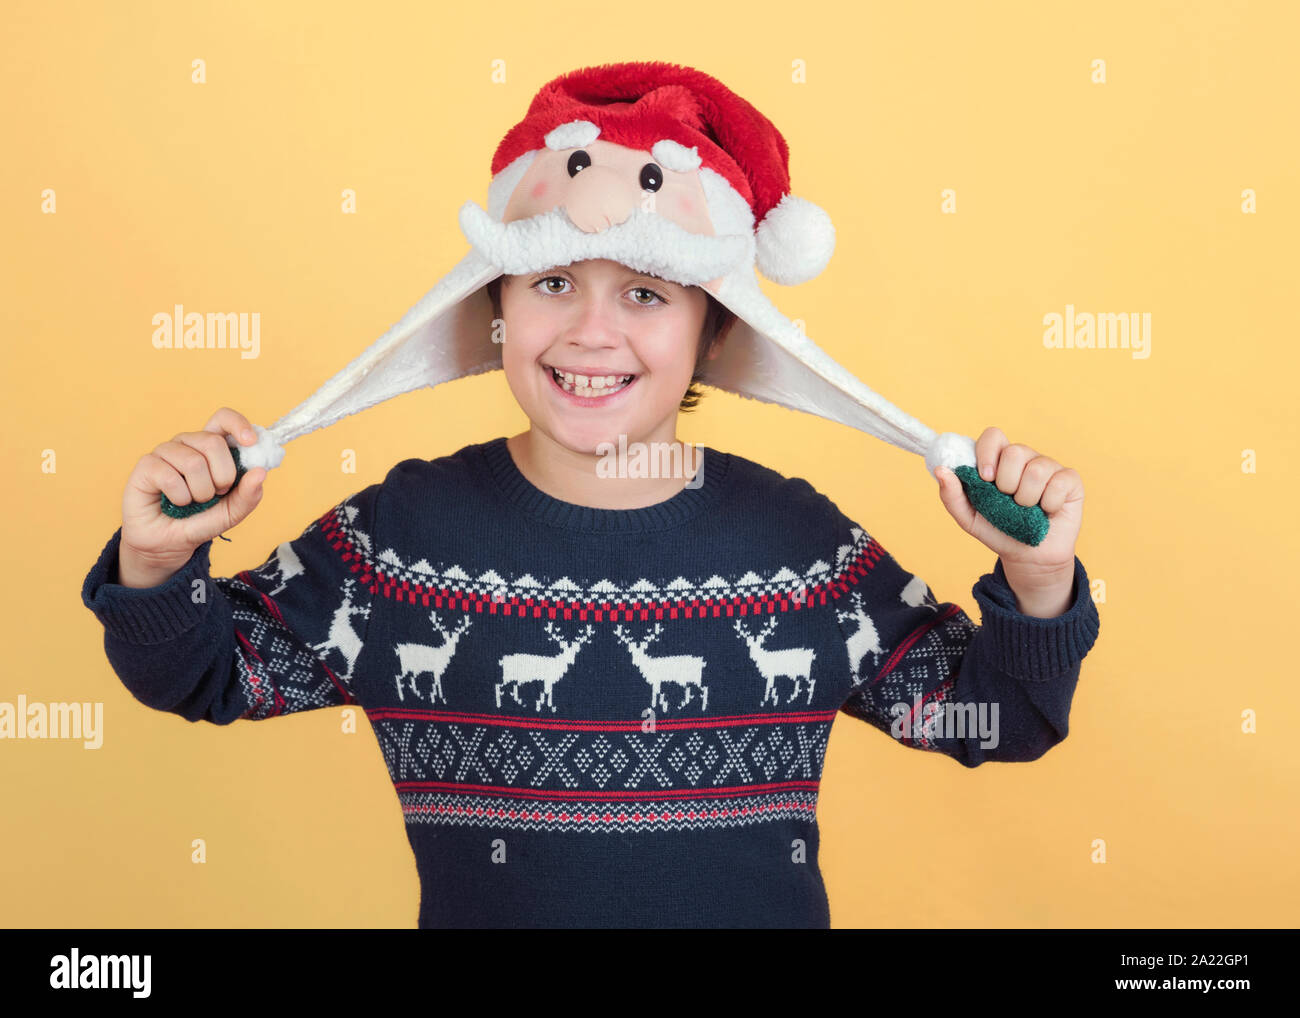 Smiling Child Wearing Christmas Santa Claus Hat sur fond jaune Banque D'Images